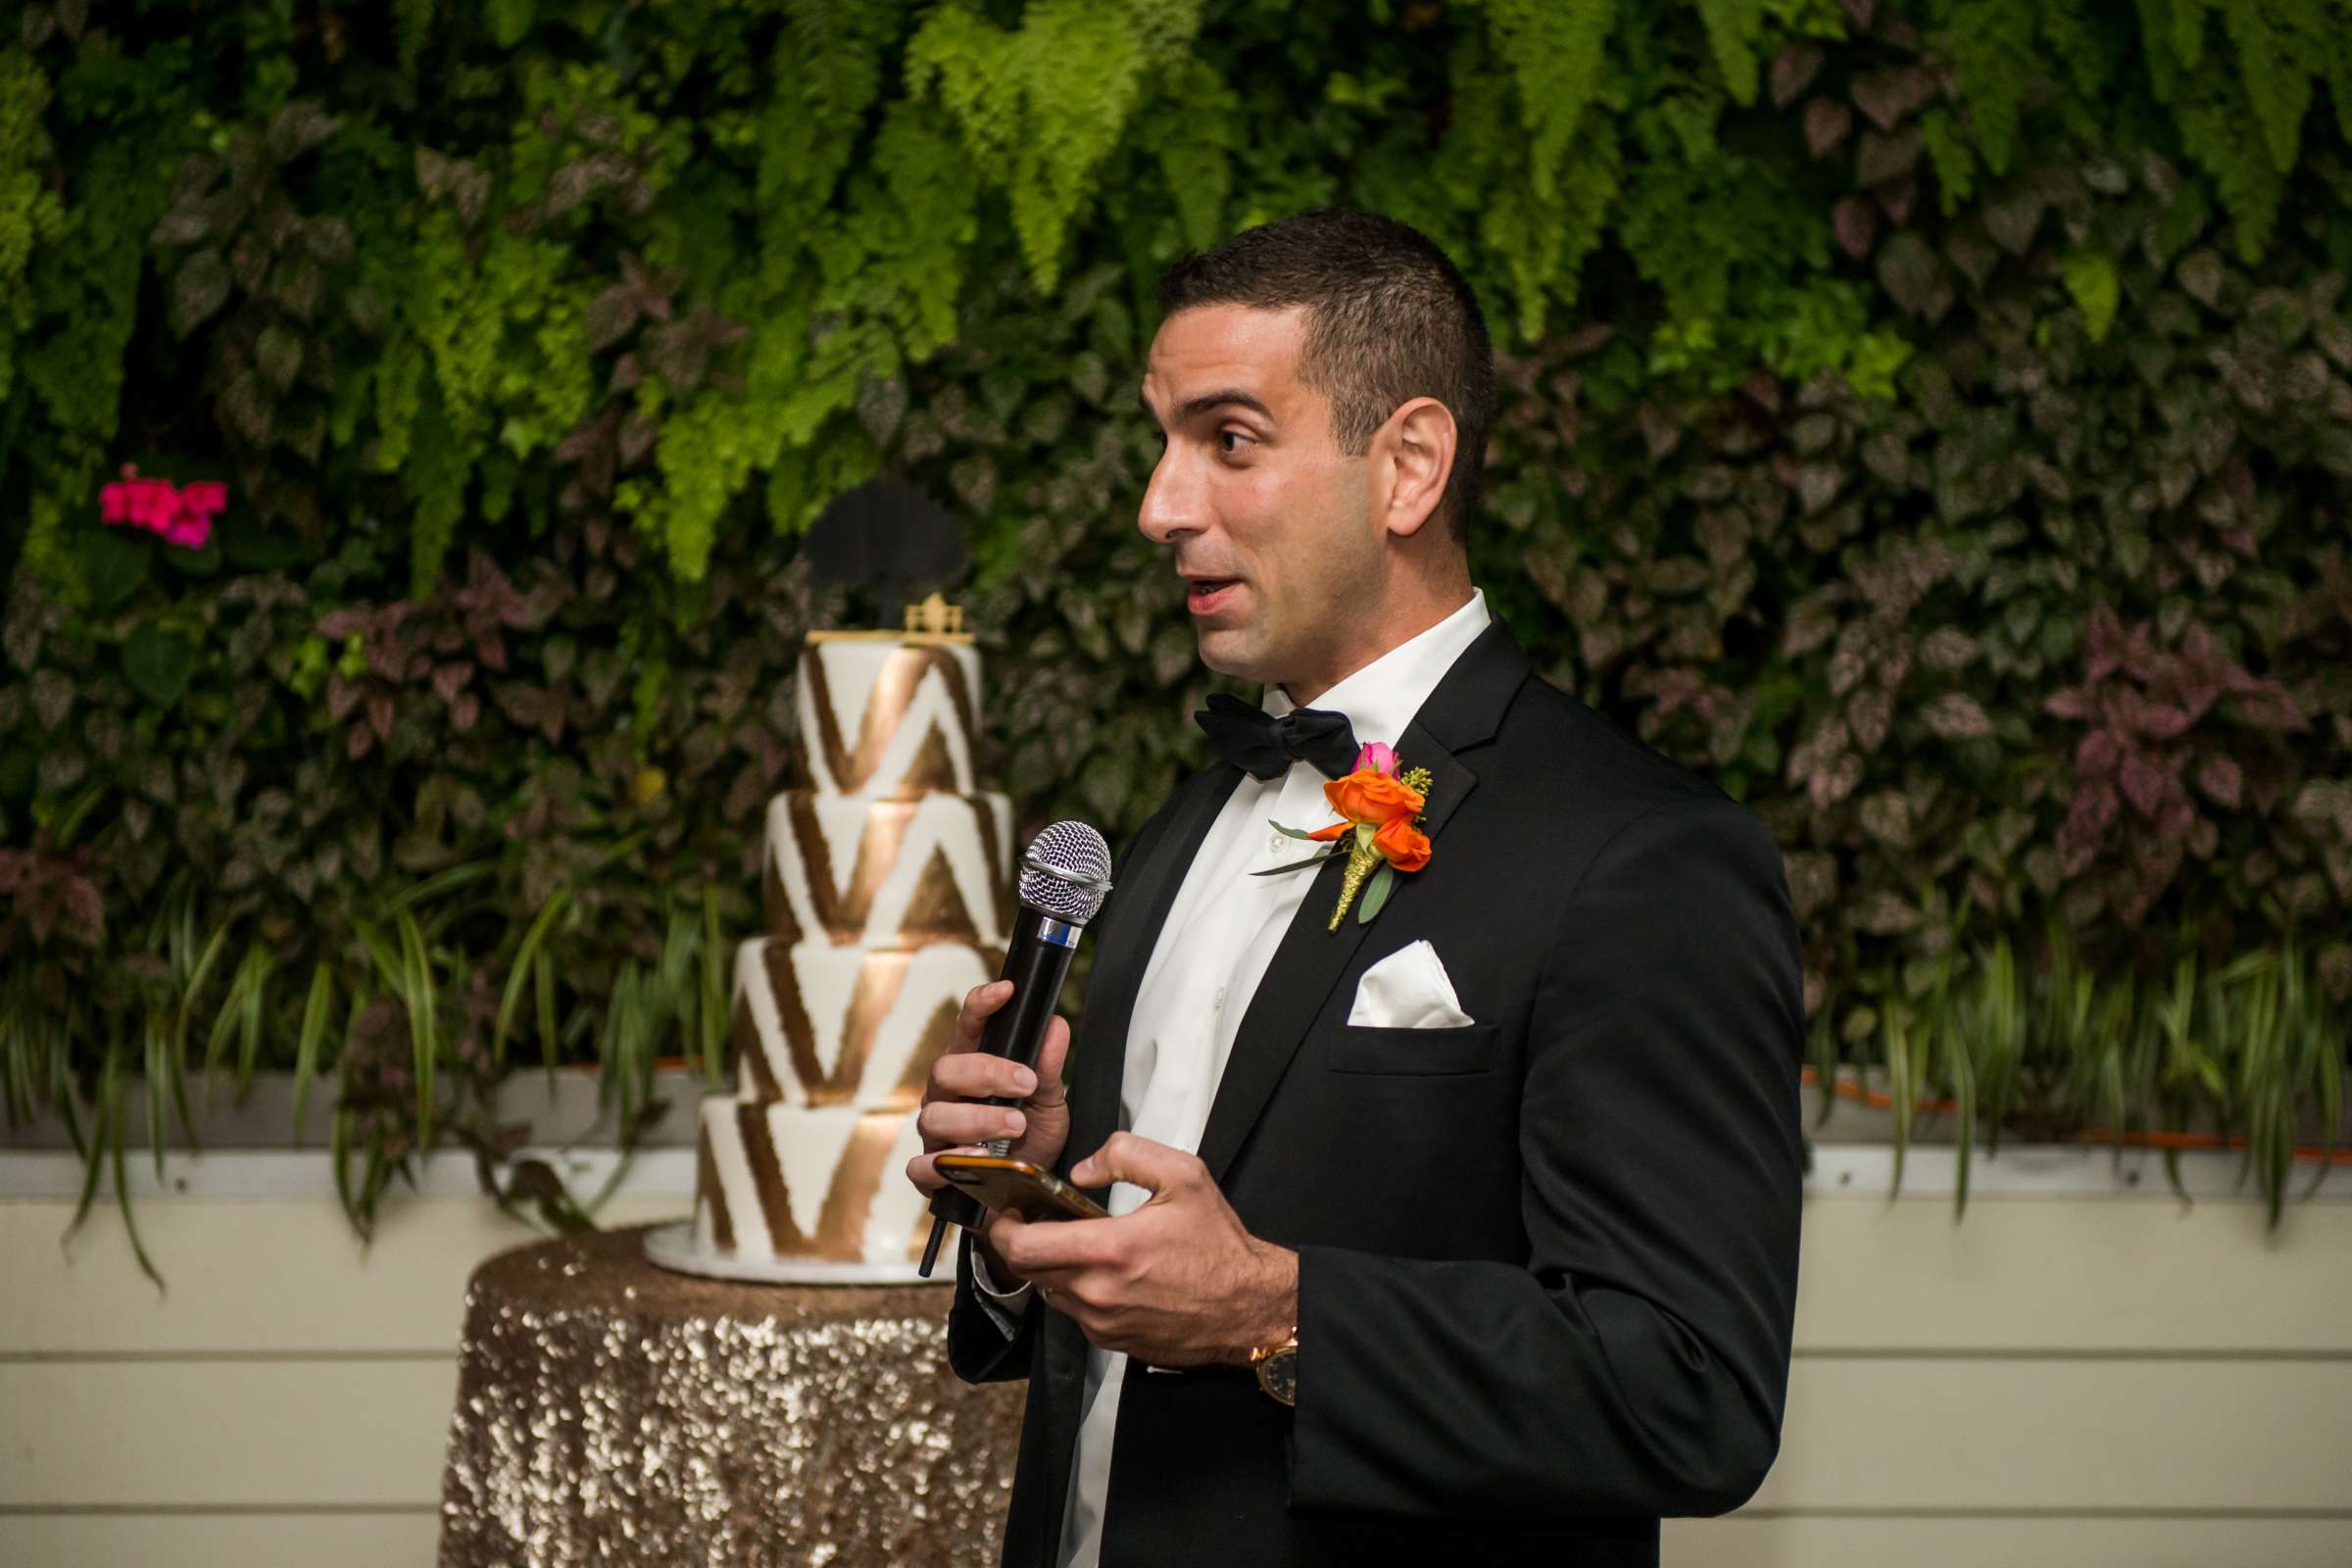 Andaz San Diego Wedding, Owen Brenna and George Wedding Photo #111 by True Photography